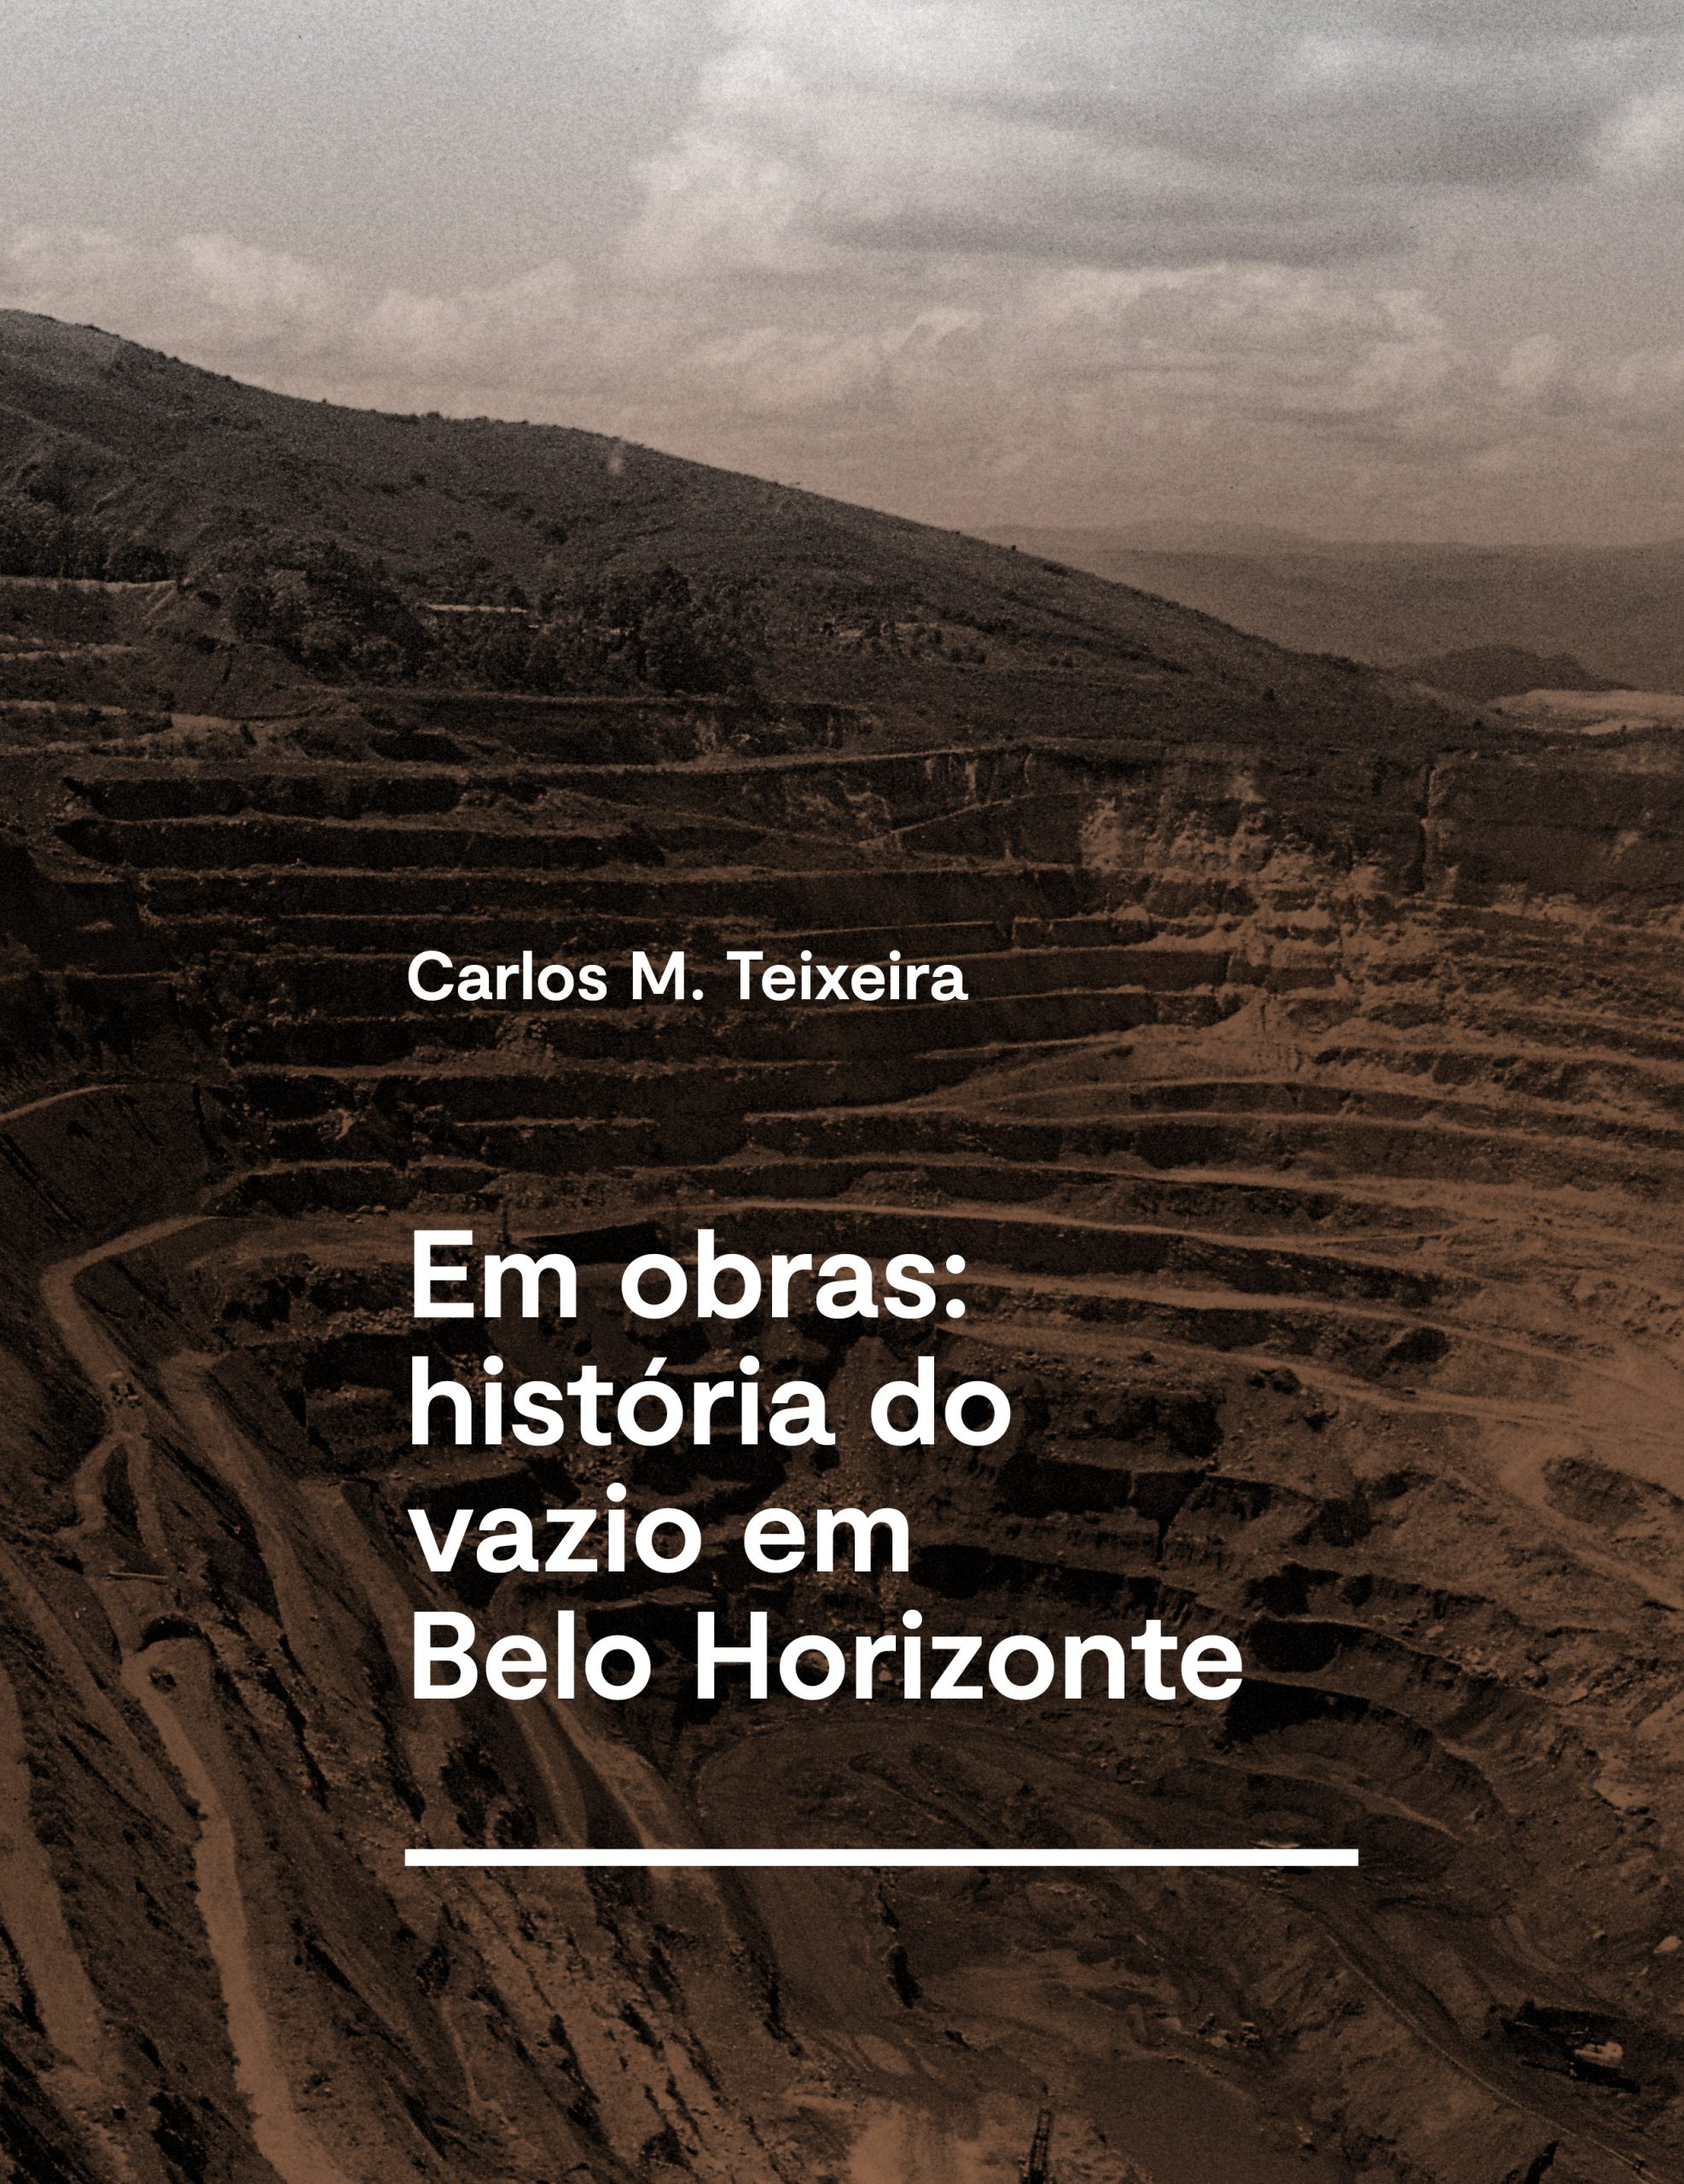 Nova edição de “Em obras: história do vazio em Belo Horizonte” ganha lançamento na capital mineira, dia 13 de agosto, na Livraria da Rua